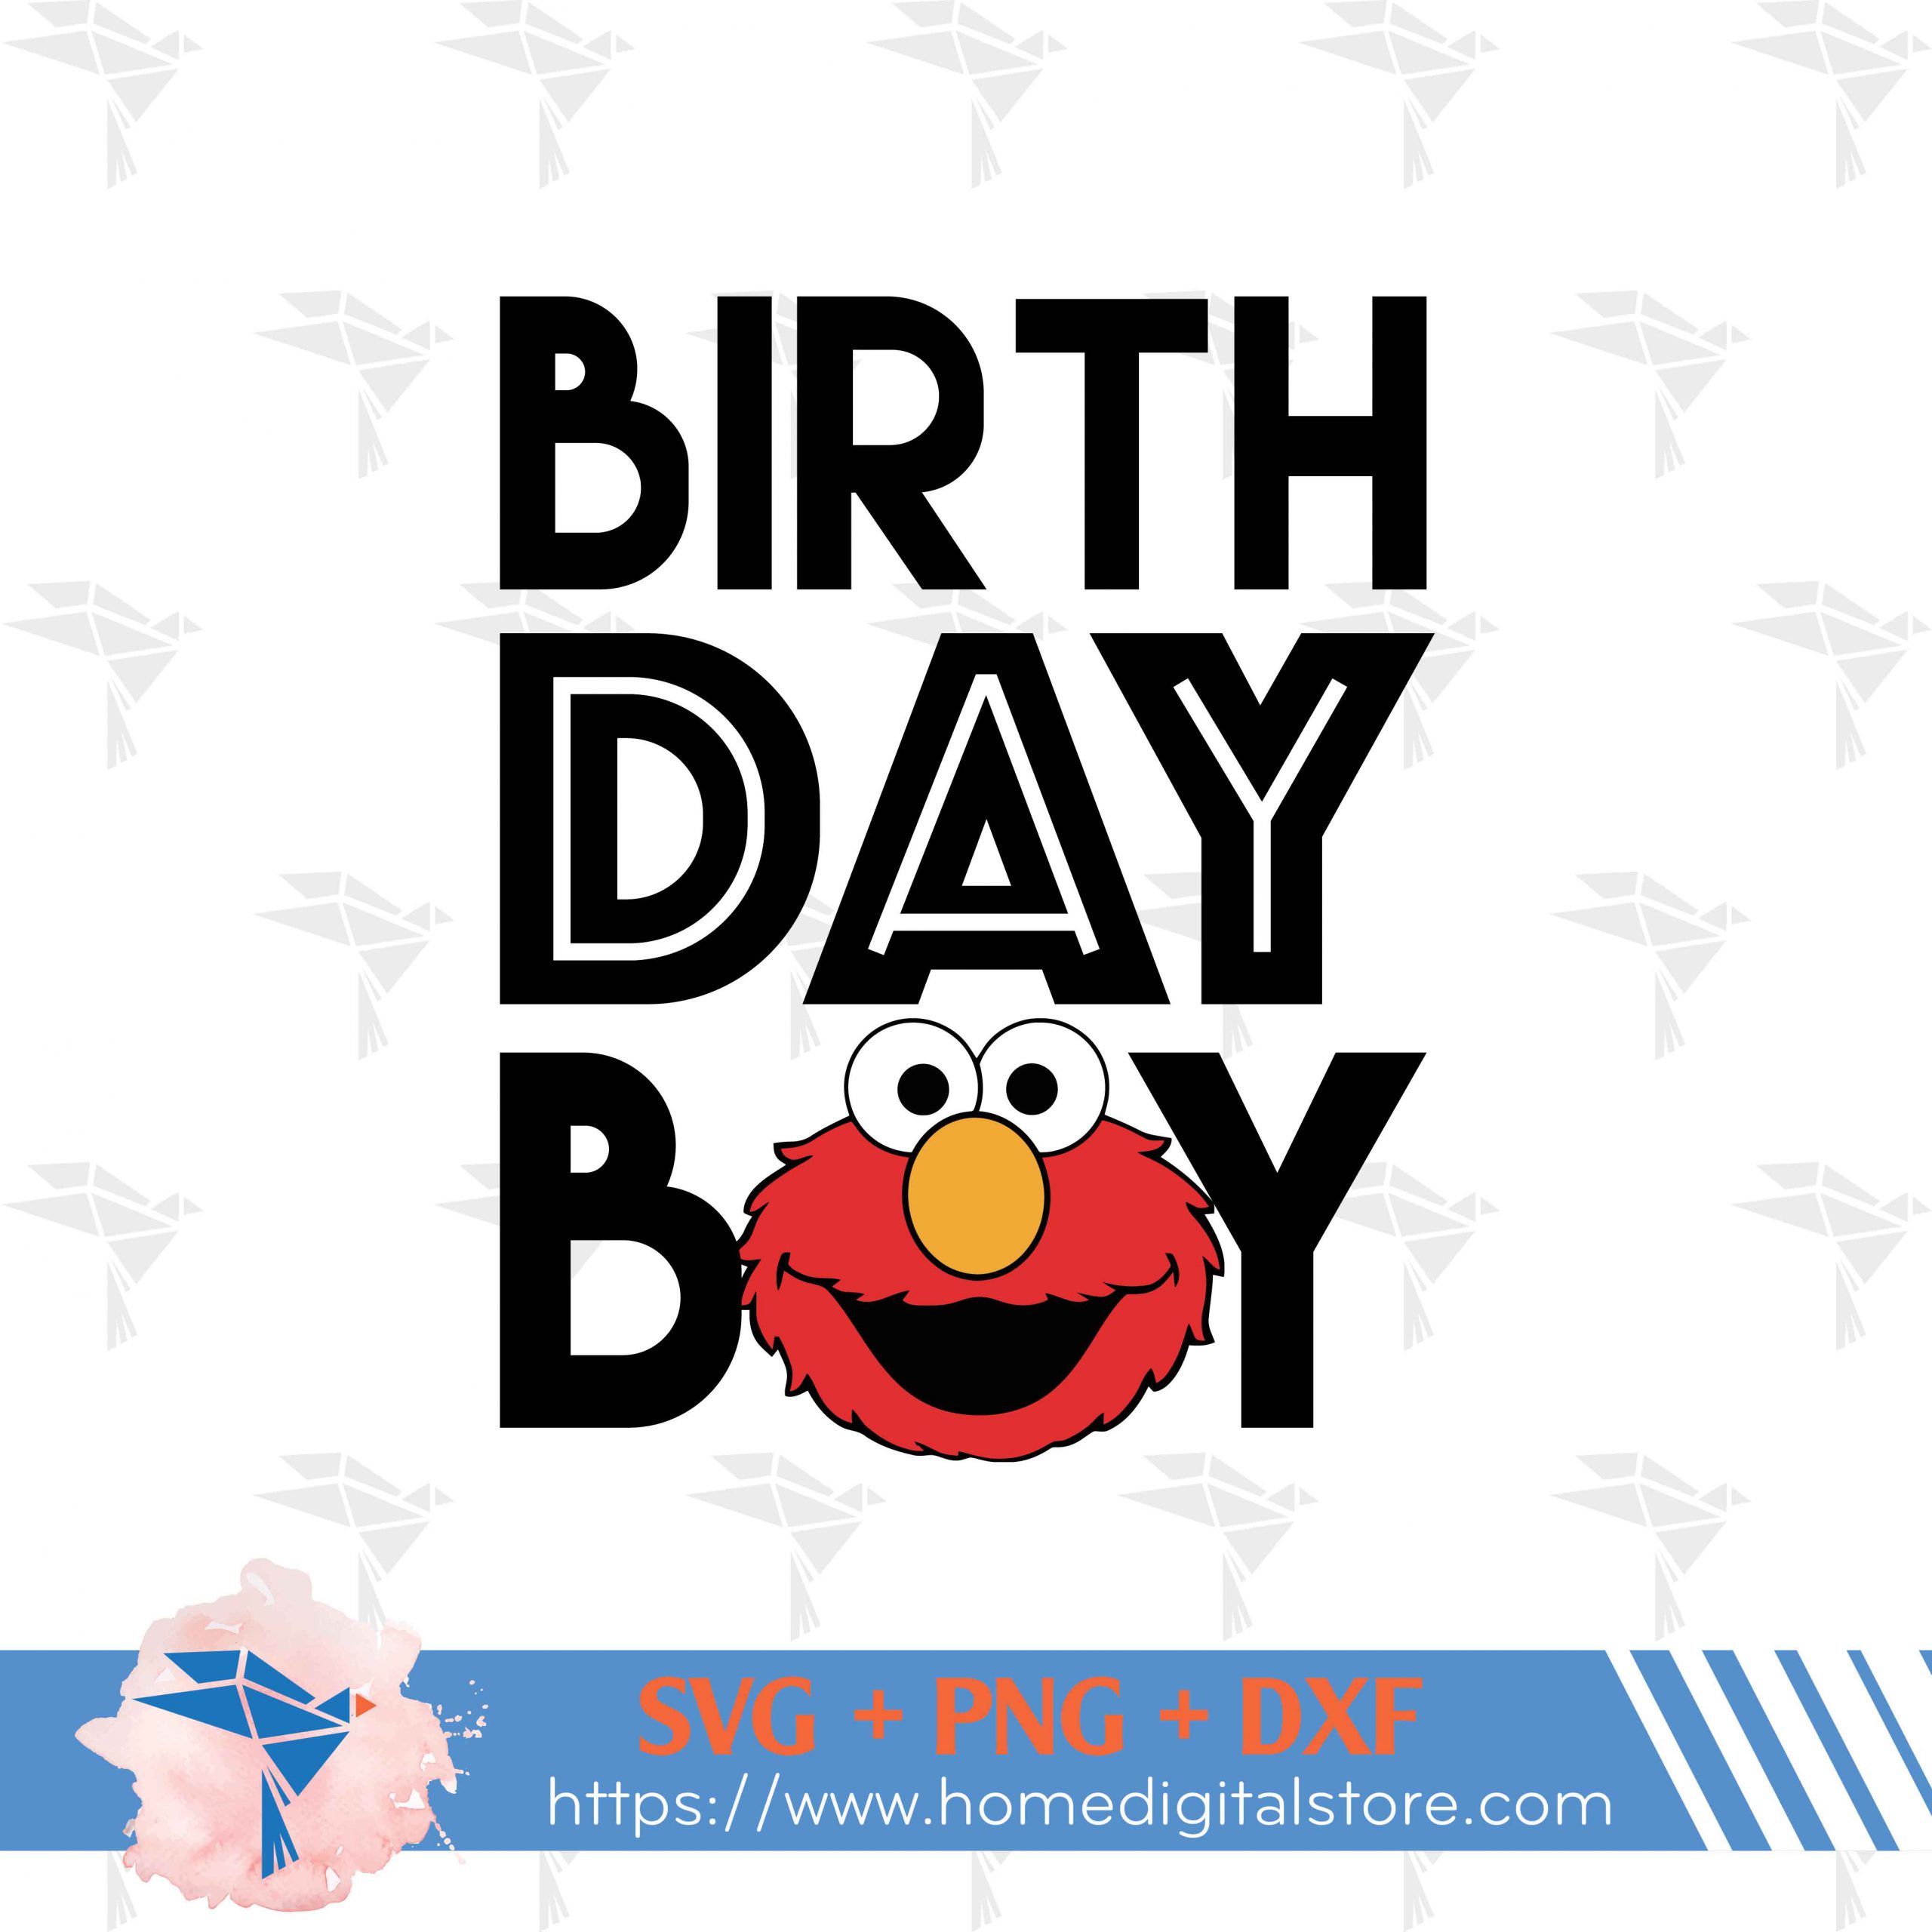 Birthday boy svg free, disney svg, birthday svg, instant download